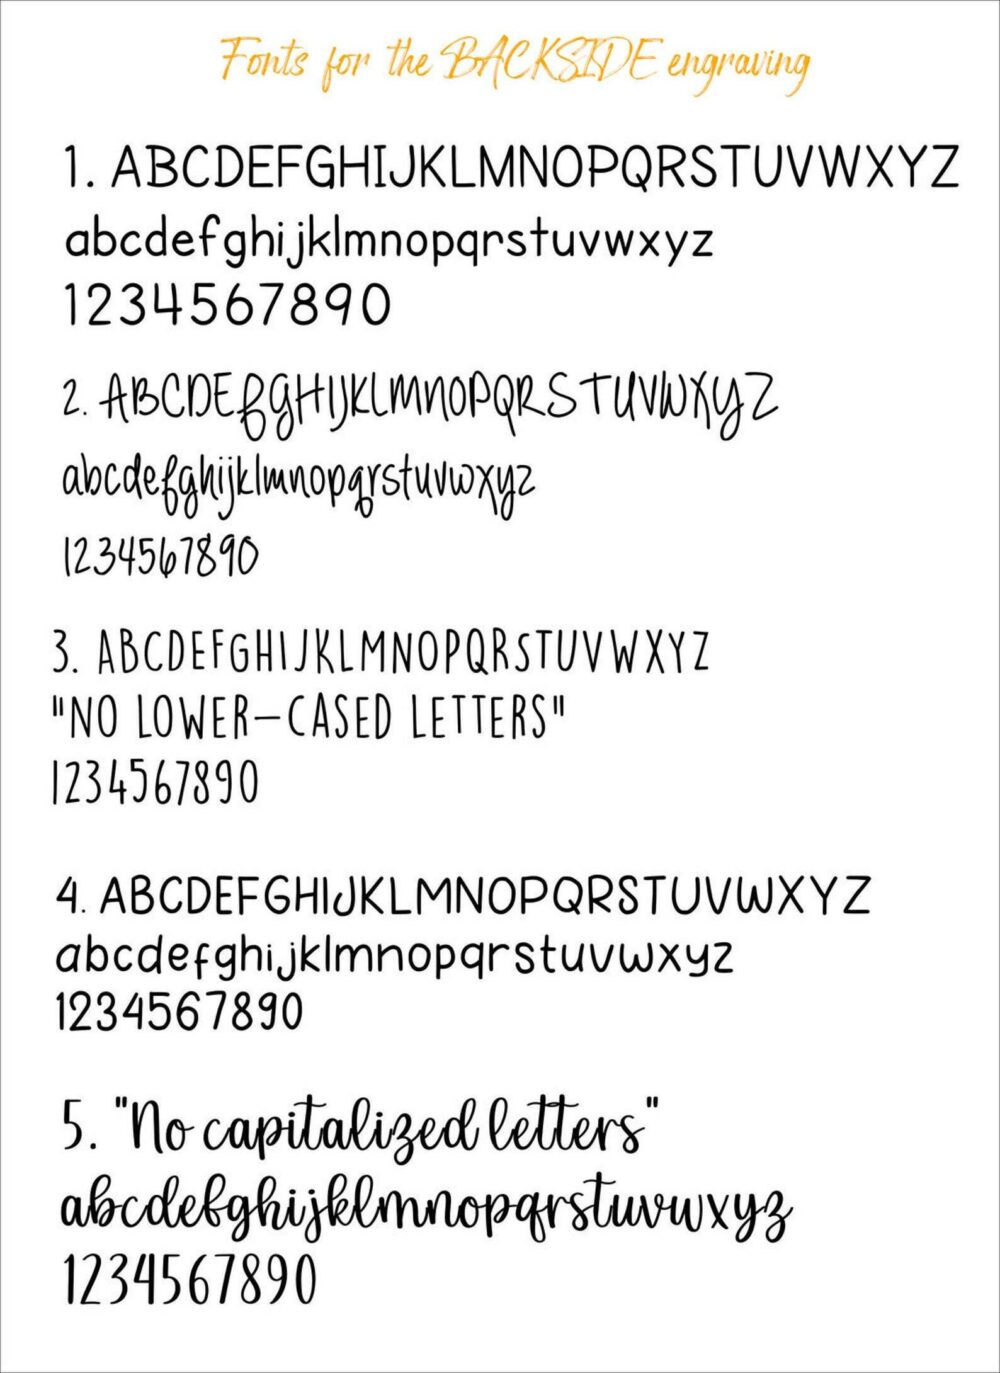 fonts for backside engraving